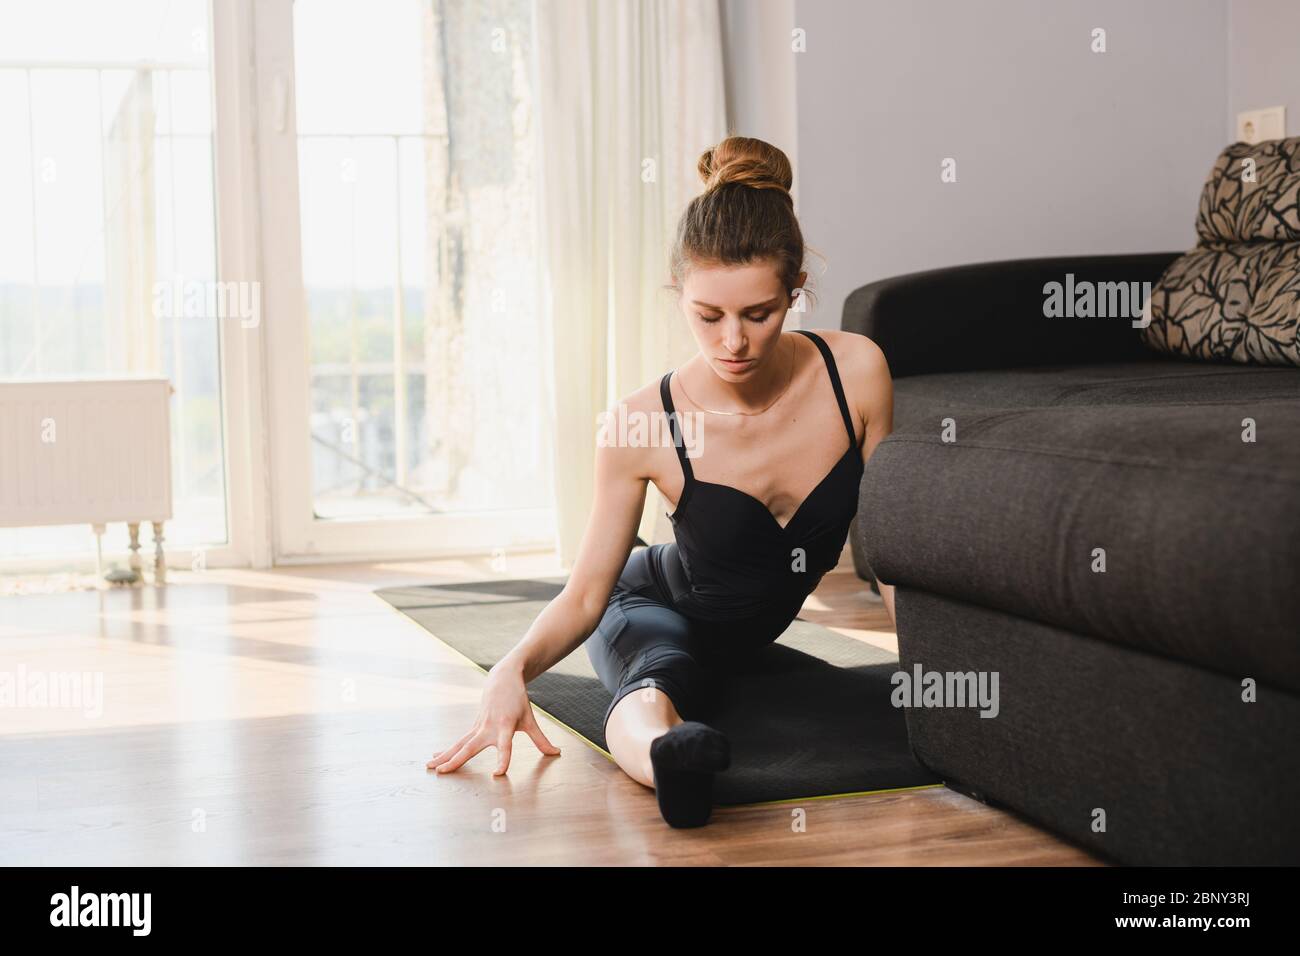 Giovane donna sportiva siede sul tappetino in spago diviso, ballerina professionista, allenatore, indossando la lebbrosa nera, attività a casa durante l'isolamento Foto Stock